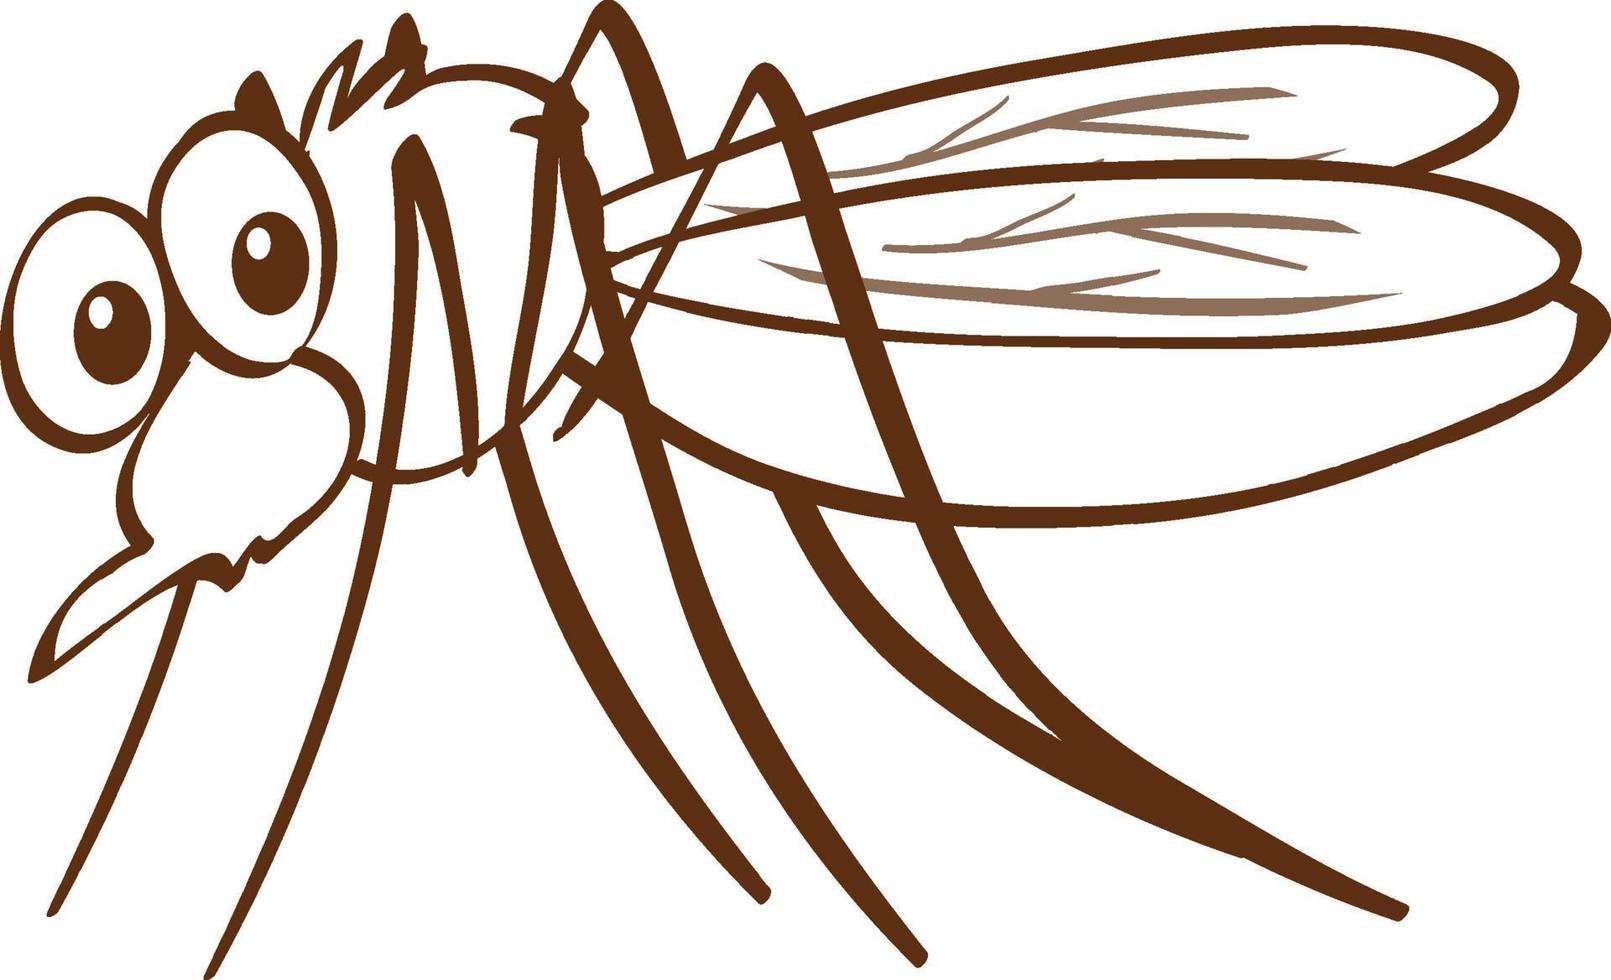 mygga i doodle enkel stil på vit bakgrund vektor